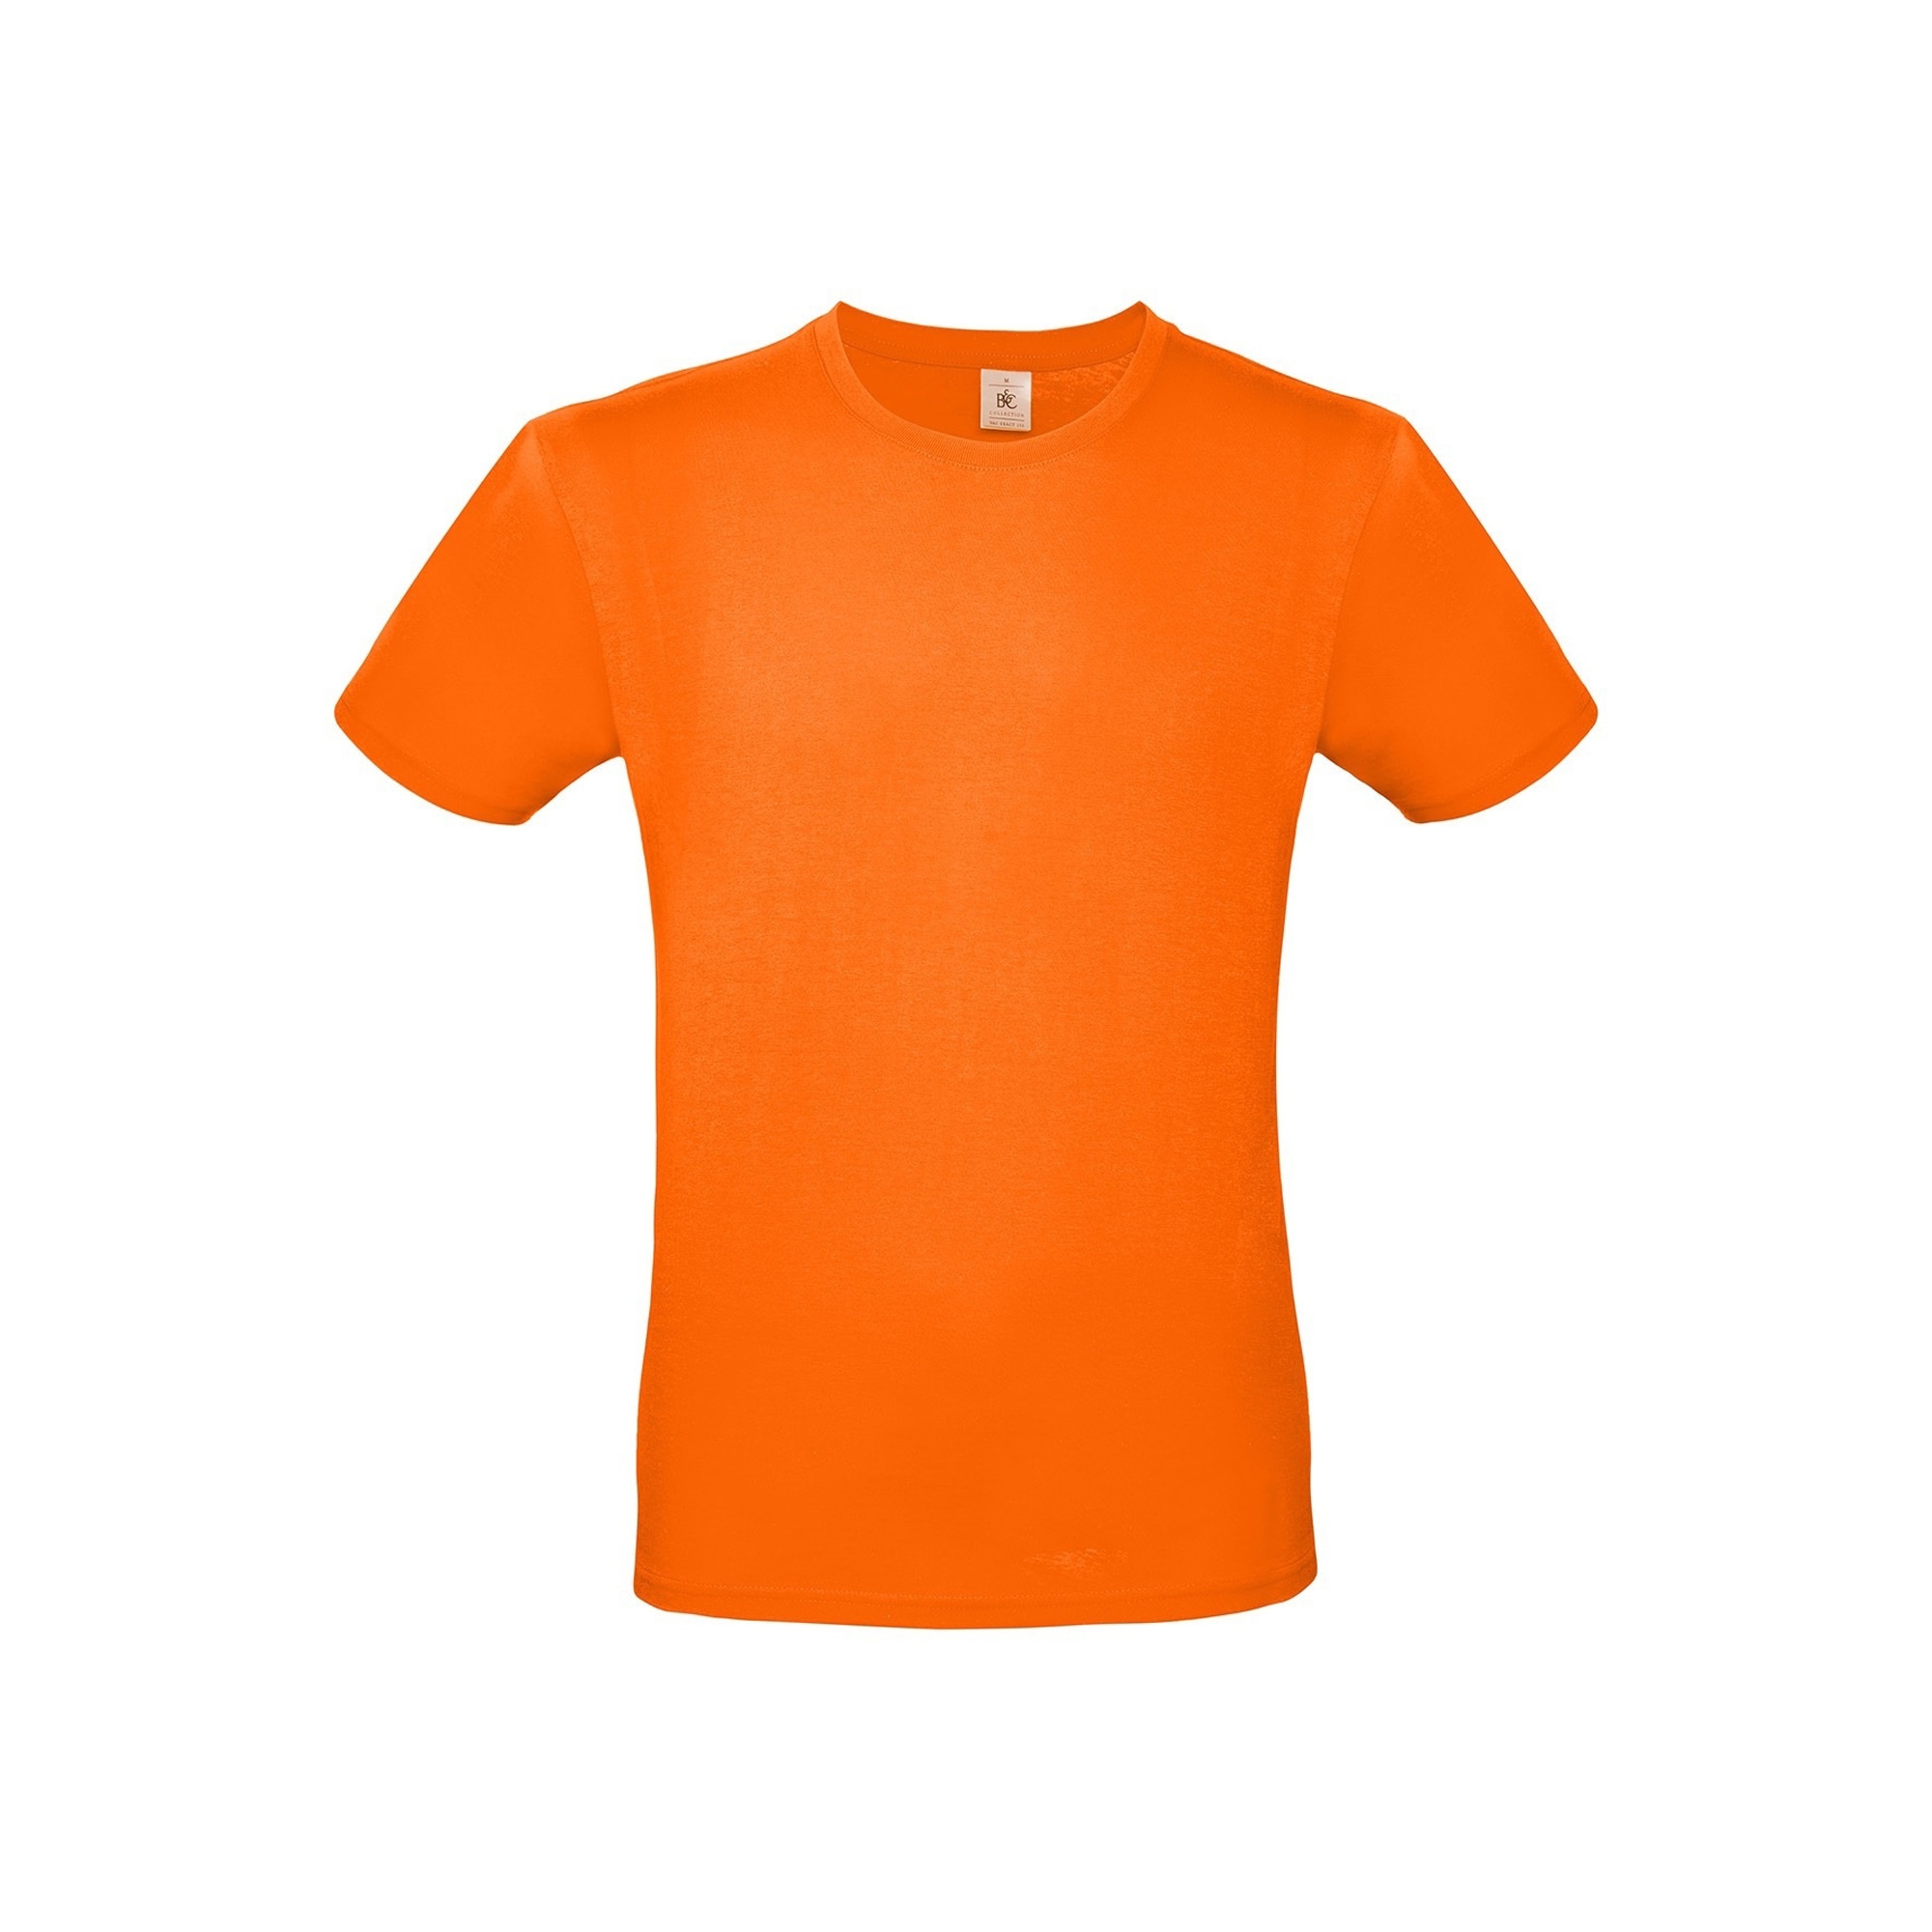 Футболка E150, оранжевый, хлопок